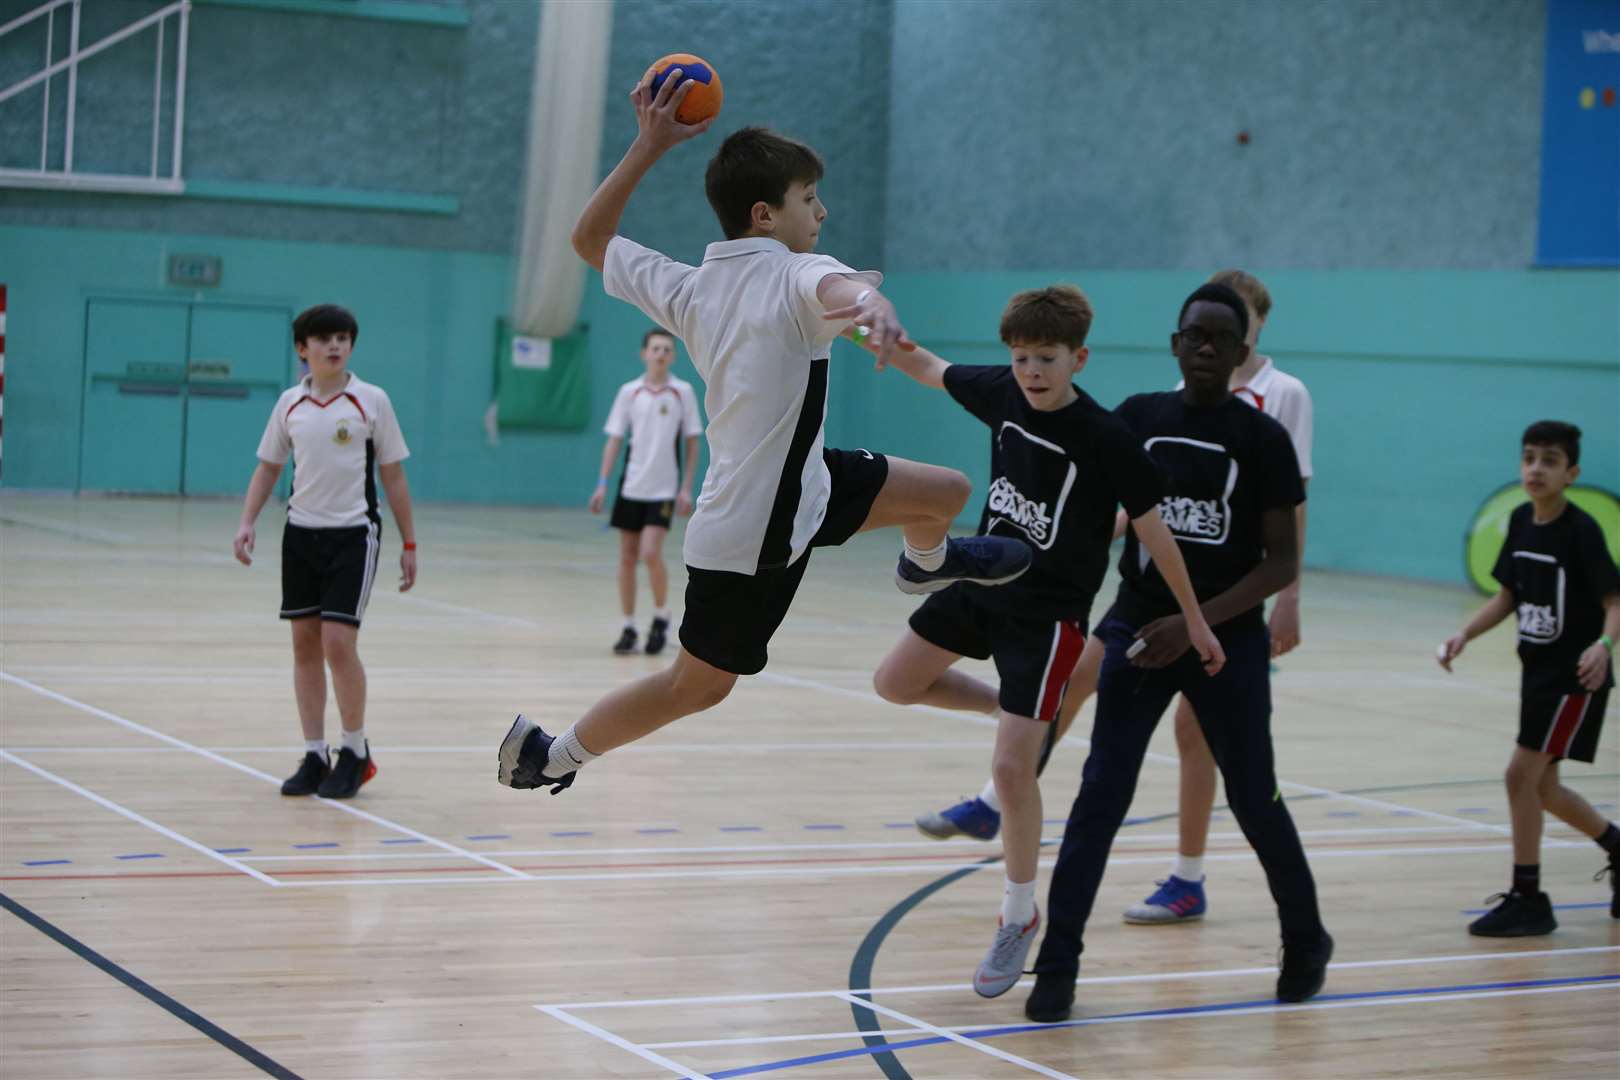 Rainham Mark and Harvey Grammar in Kent School Games handball action in 2019. Picture: Andy Jones (43916300)